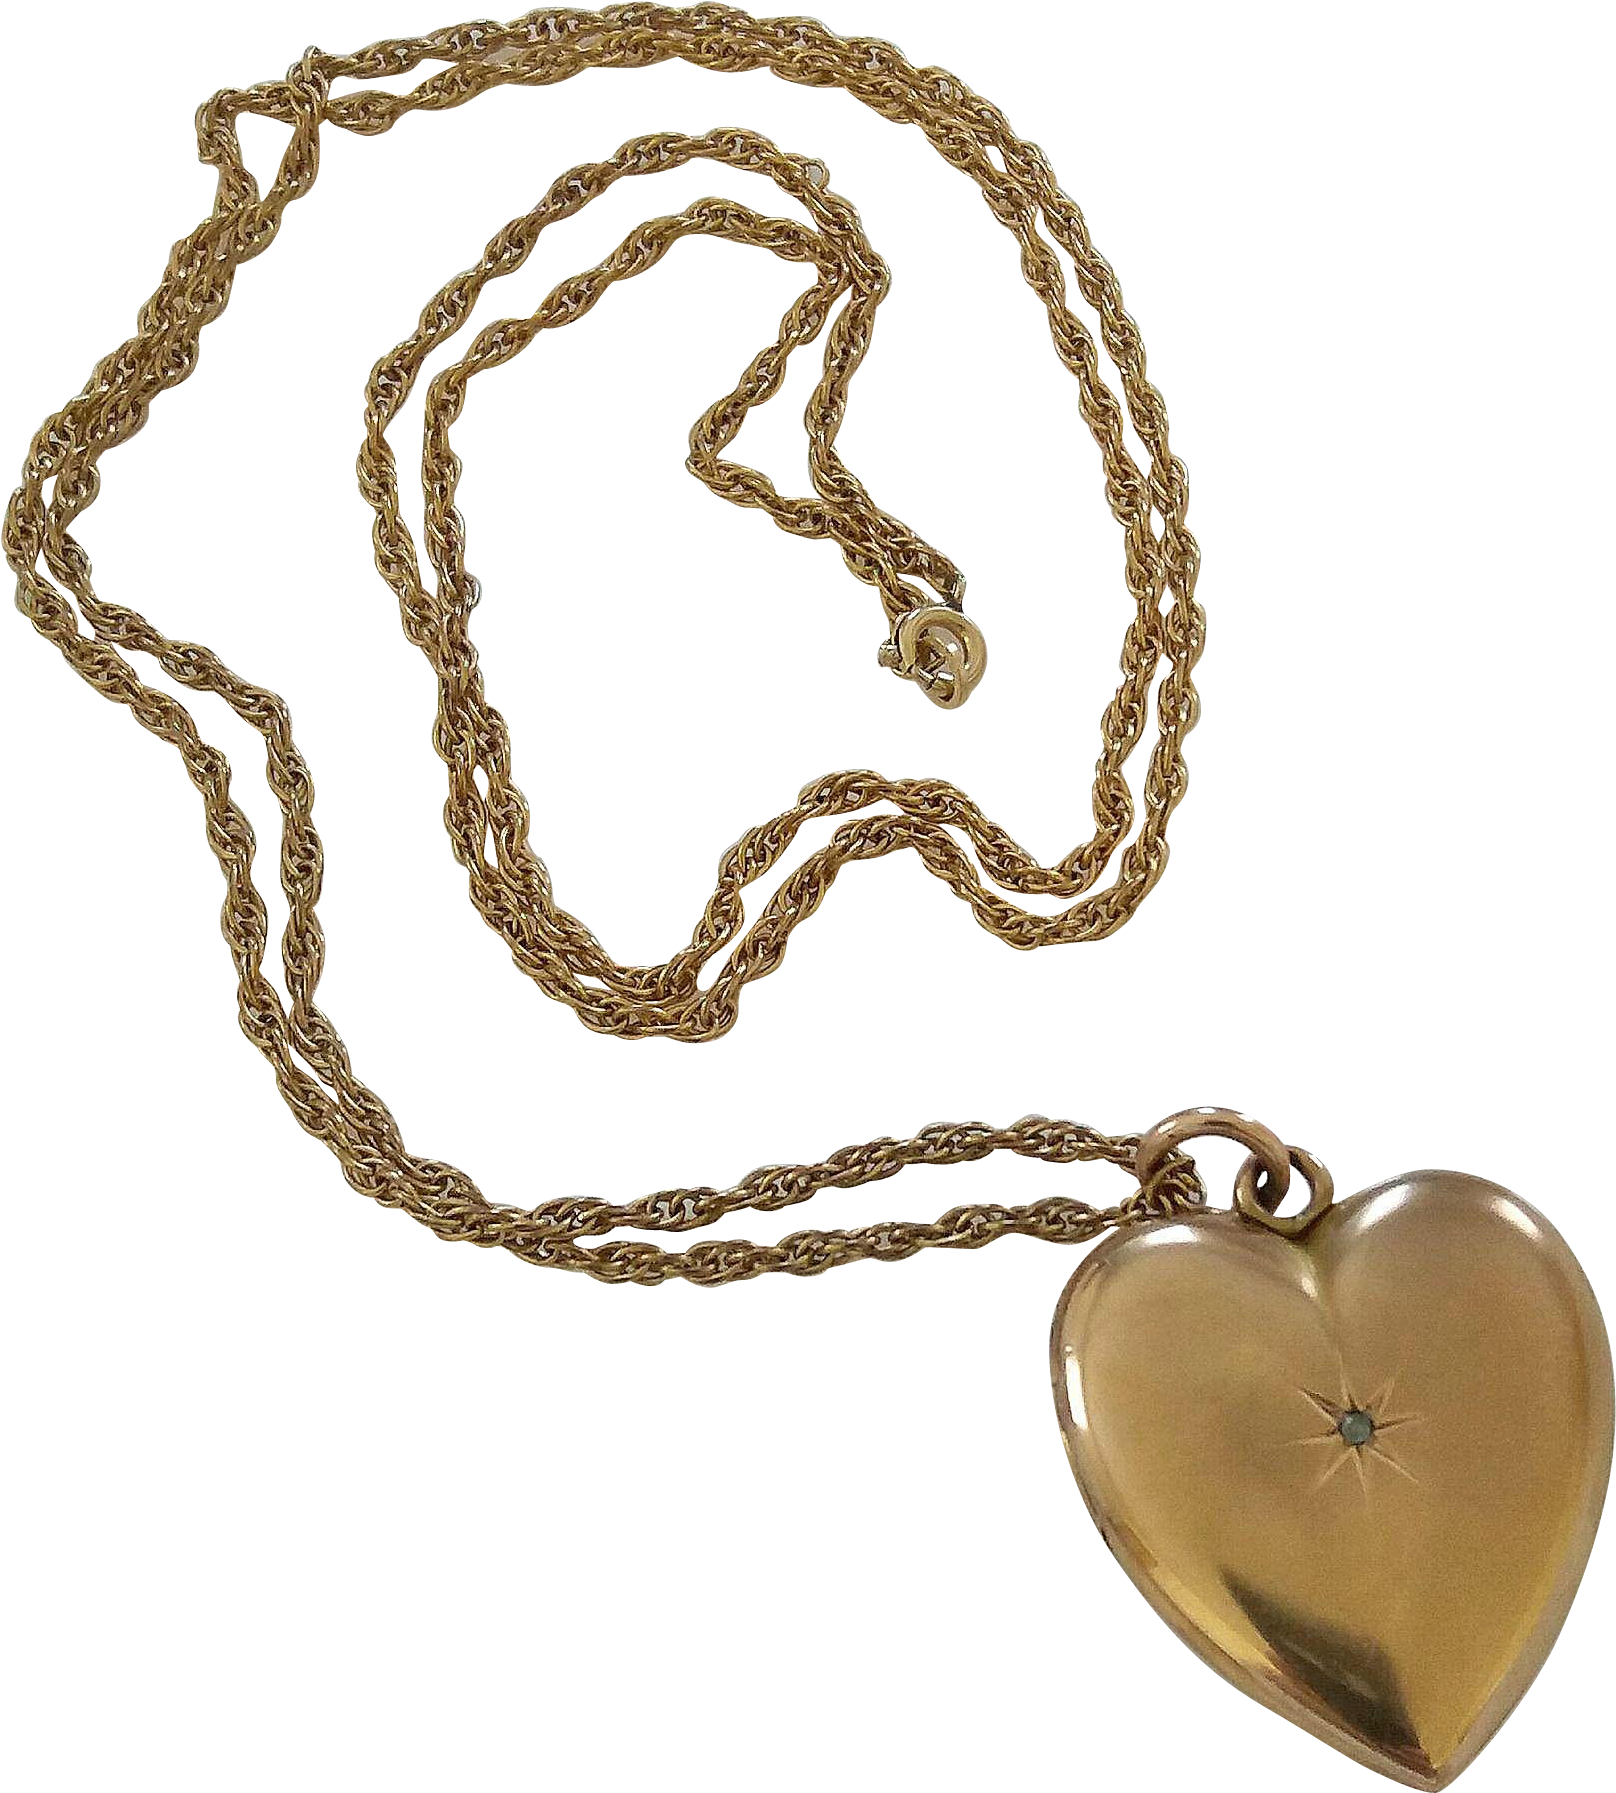 Fondo de imagen de la imagen del medallón del corazón del amor